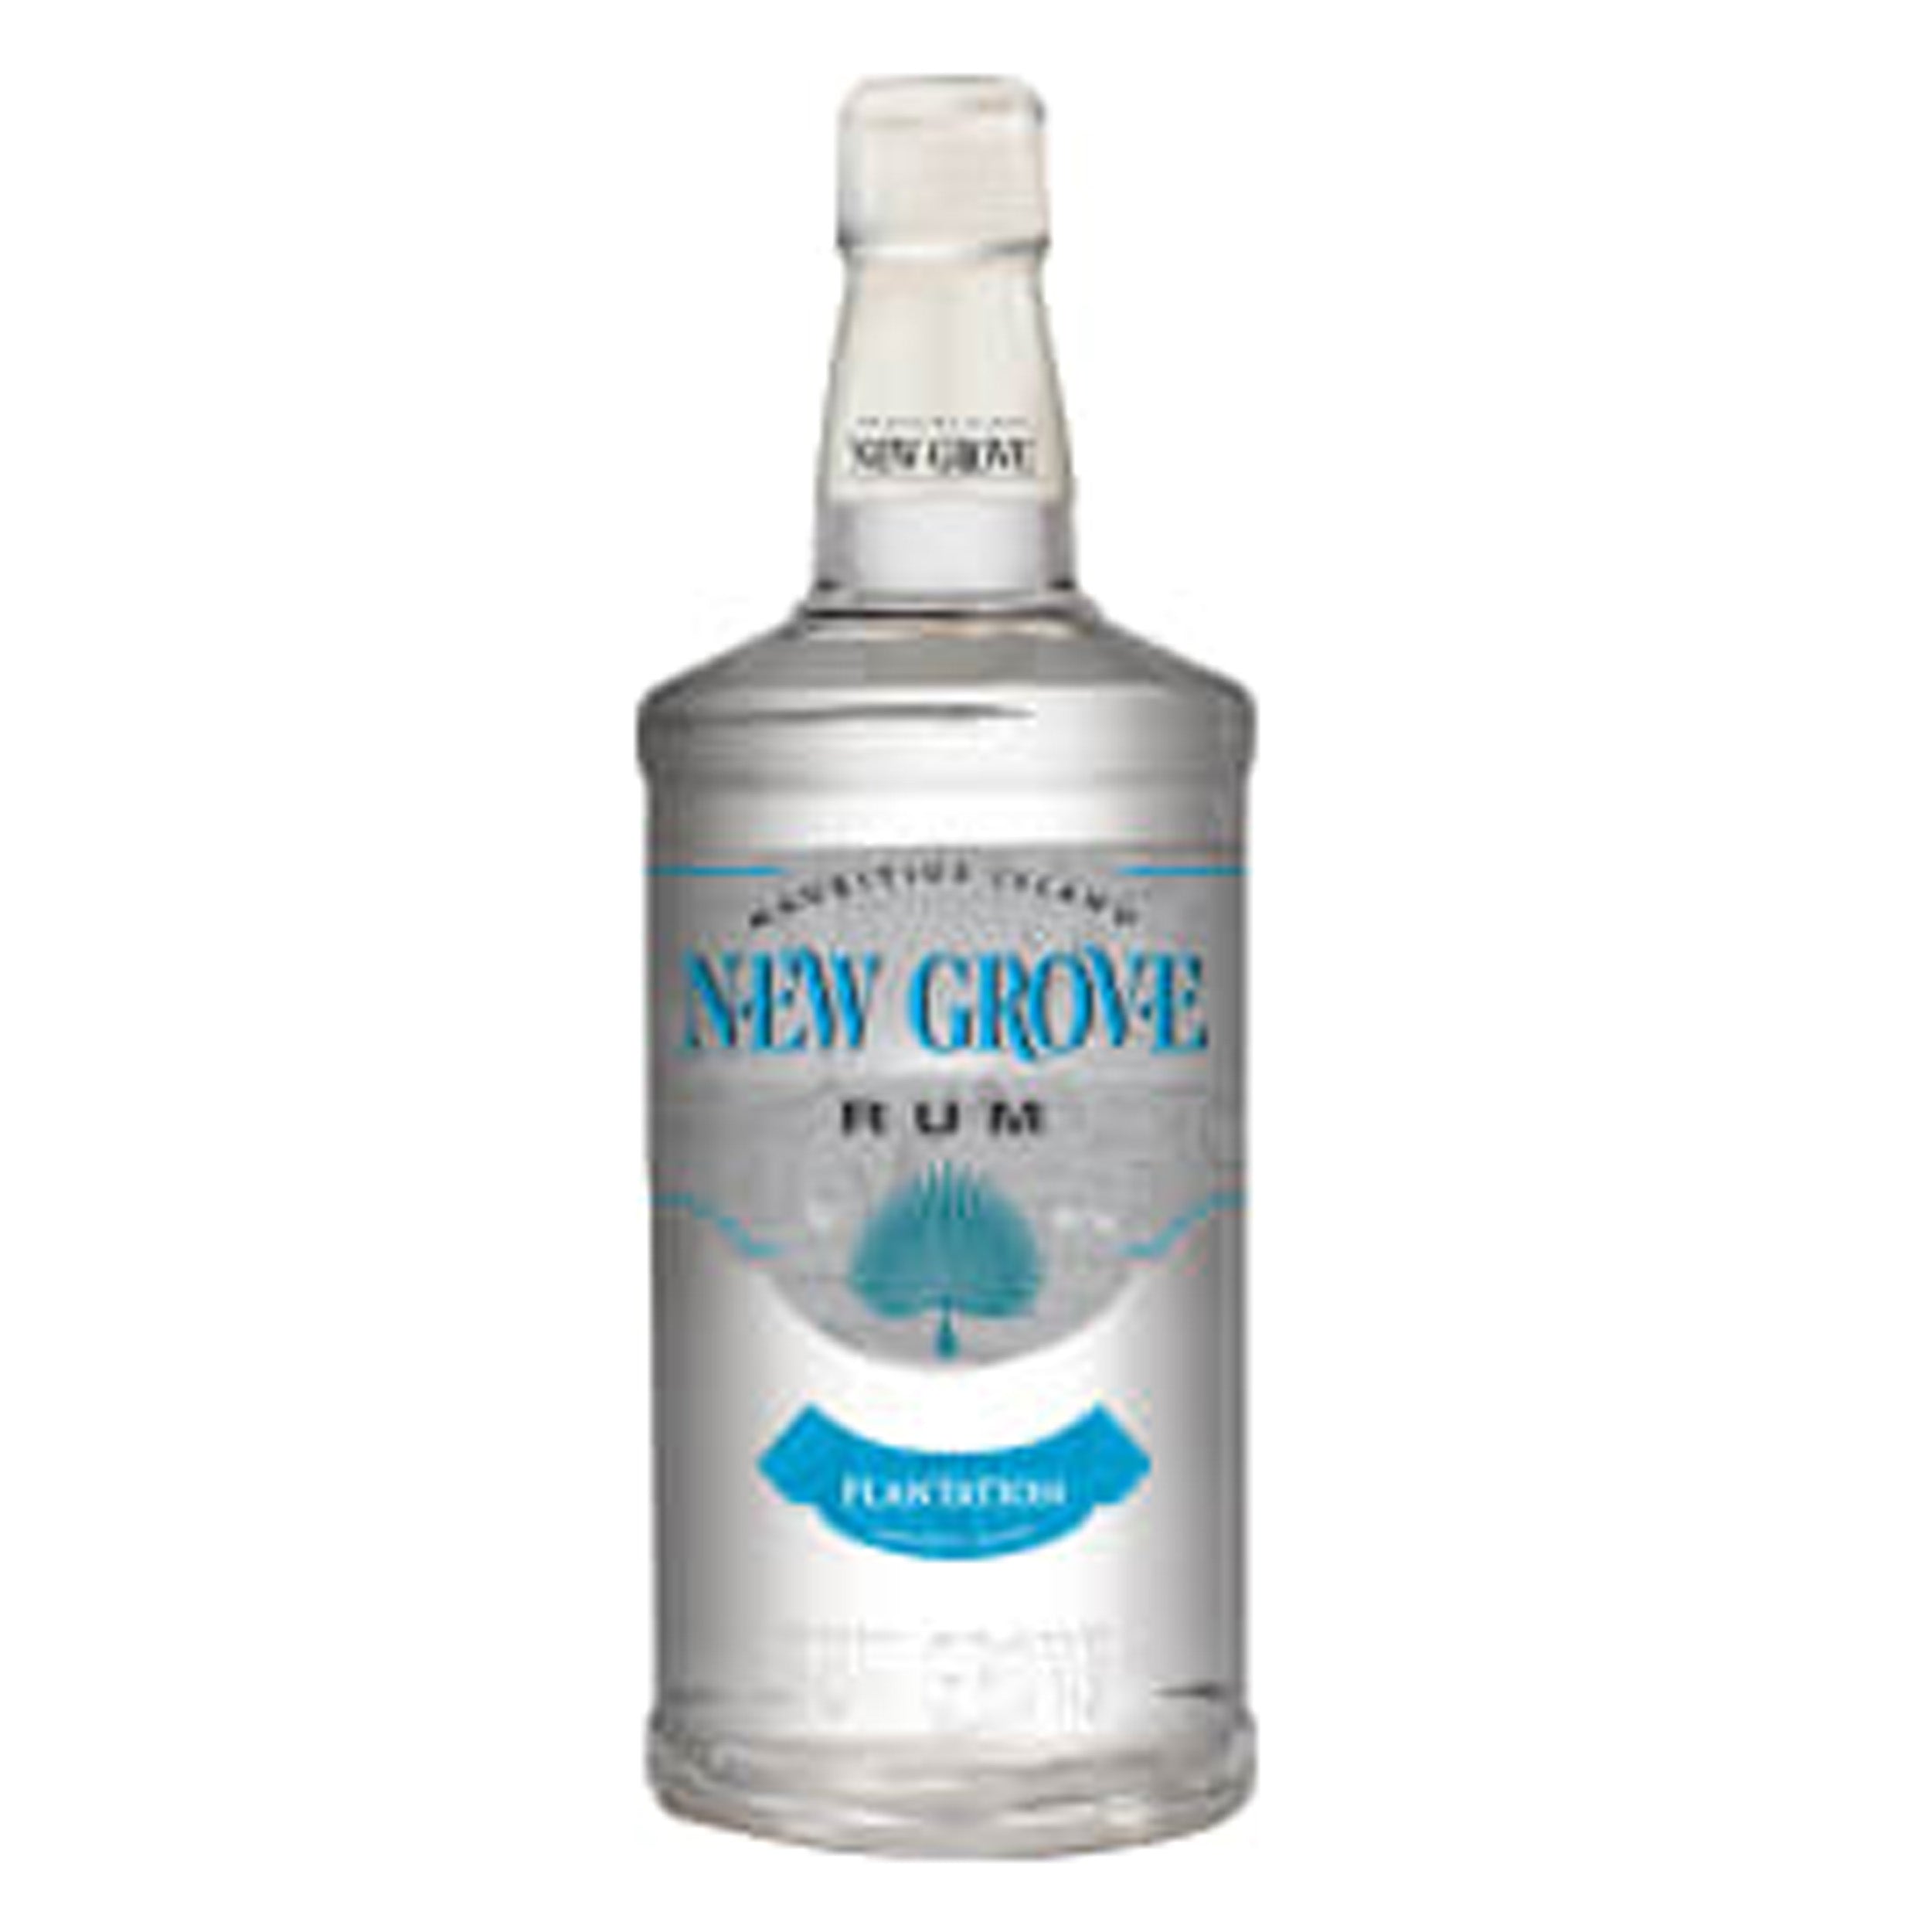 New Grove Plantation White Rum